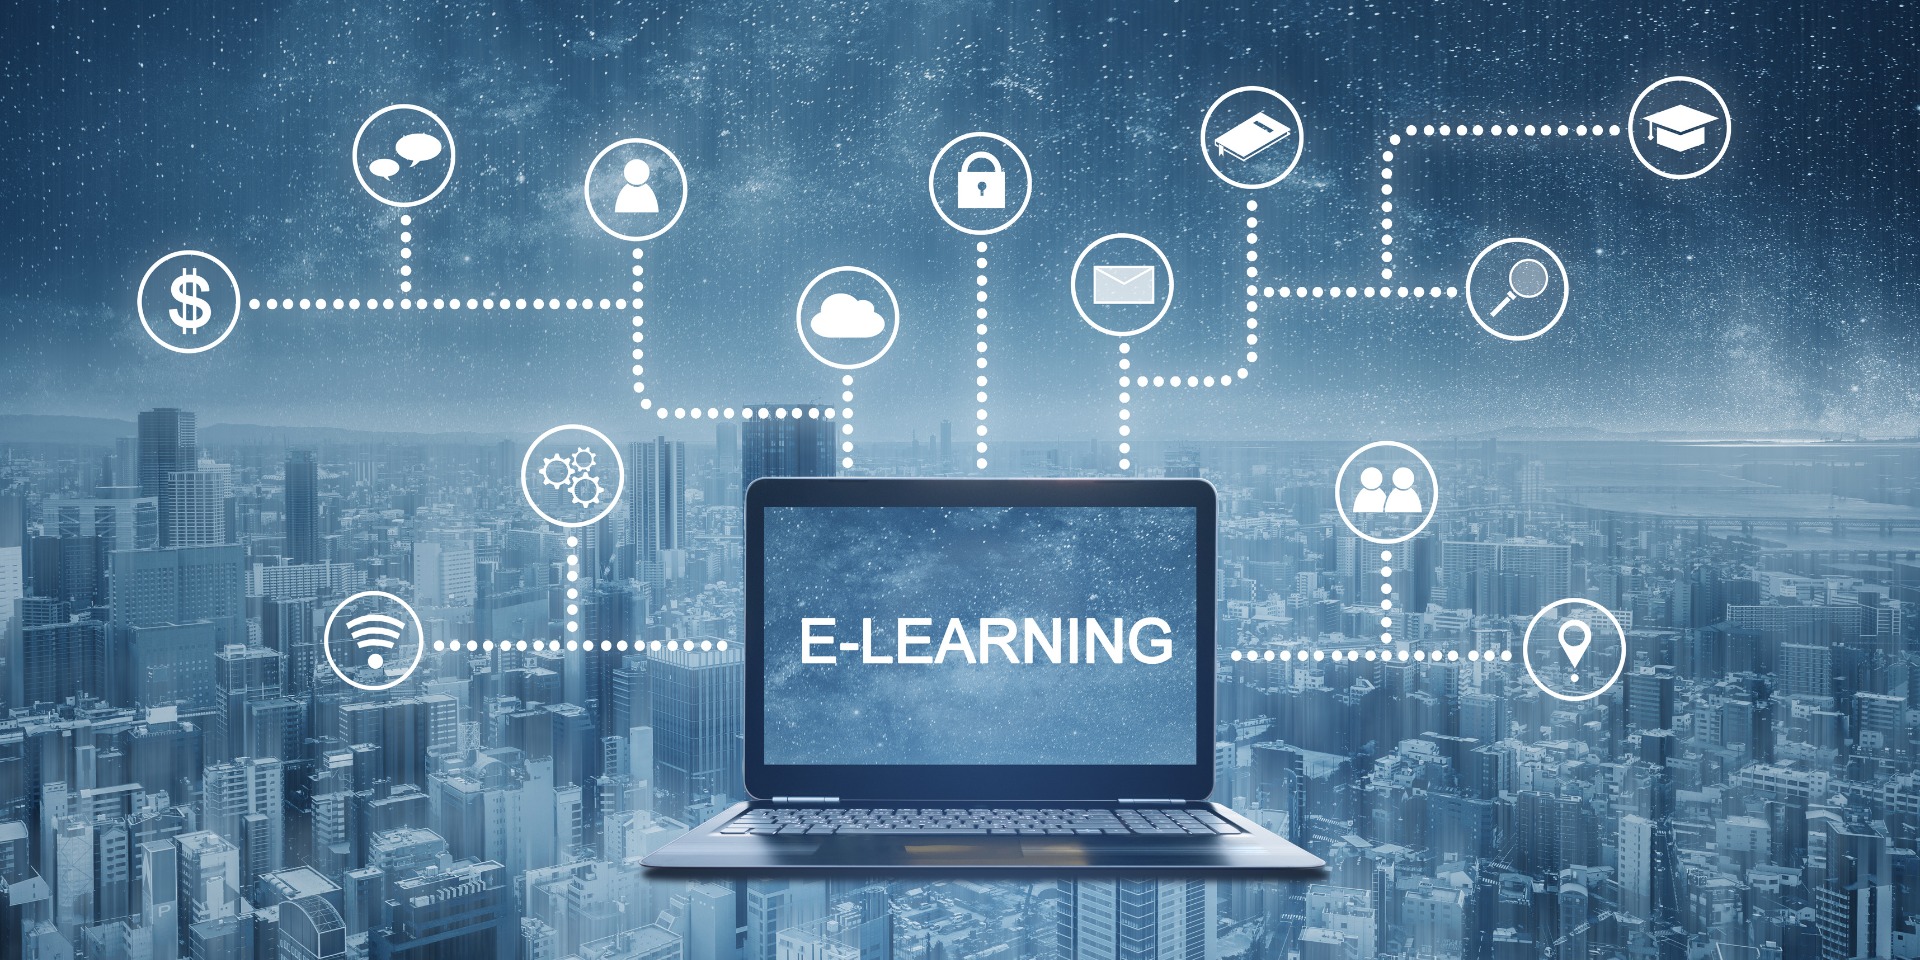 ความสำคัญของ e-Learning ในยุคปัจจุบัน